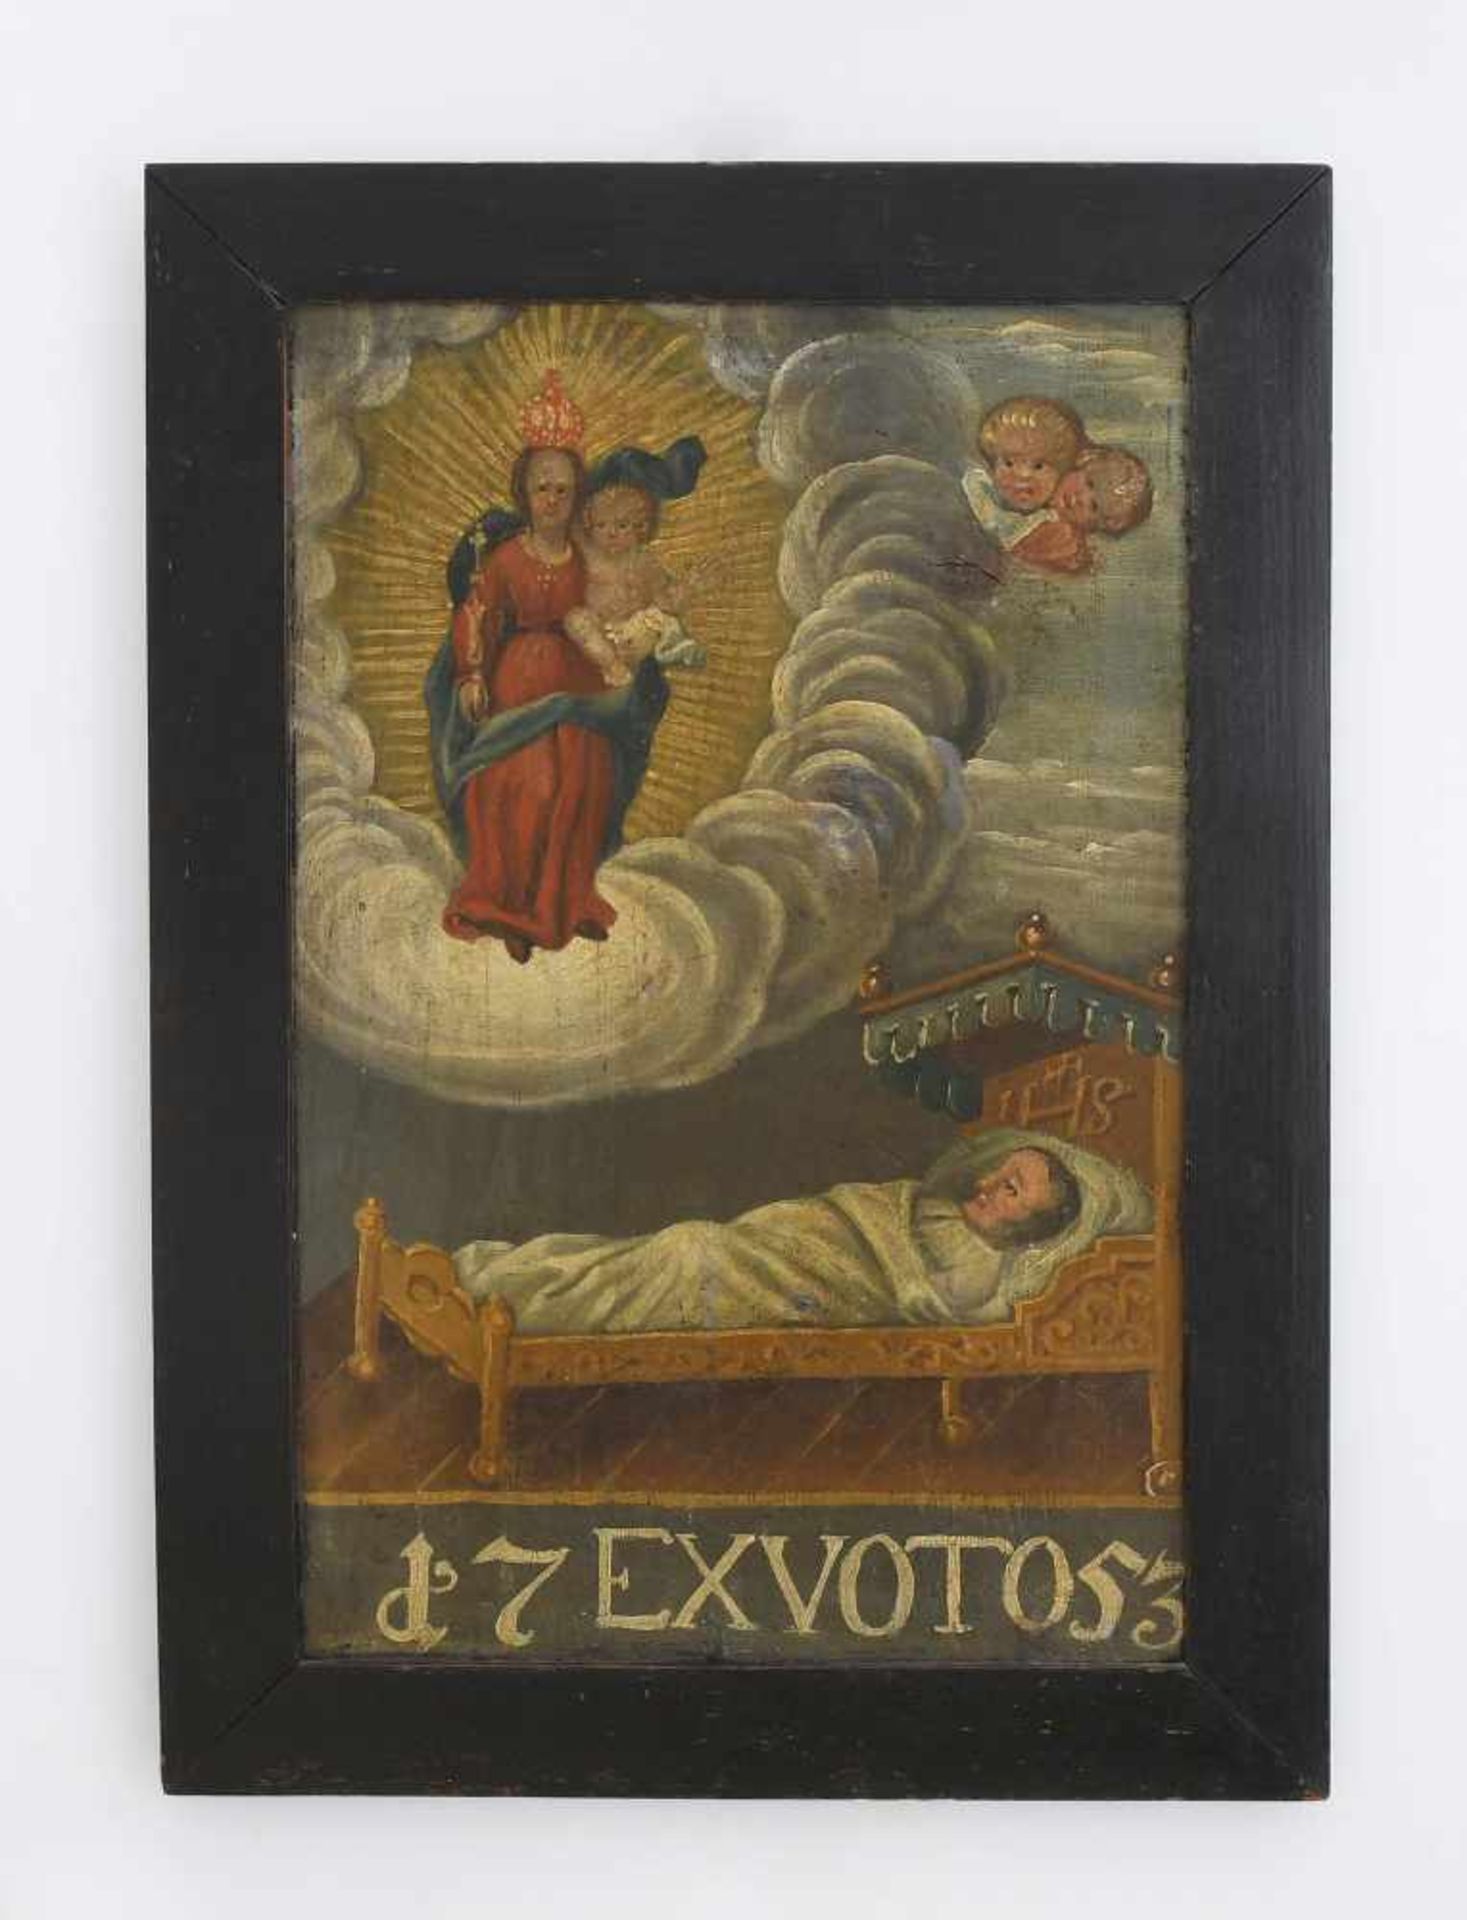 VotivbildAlpenländisch, datiert 1753. Öl auf Holz. In den Wolken Maria mit Krone und Zepter, das